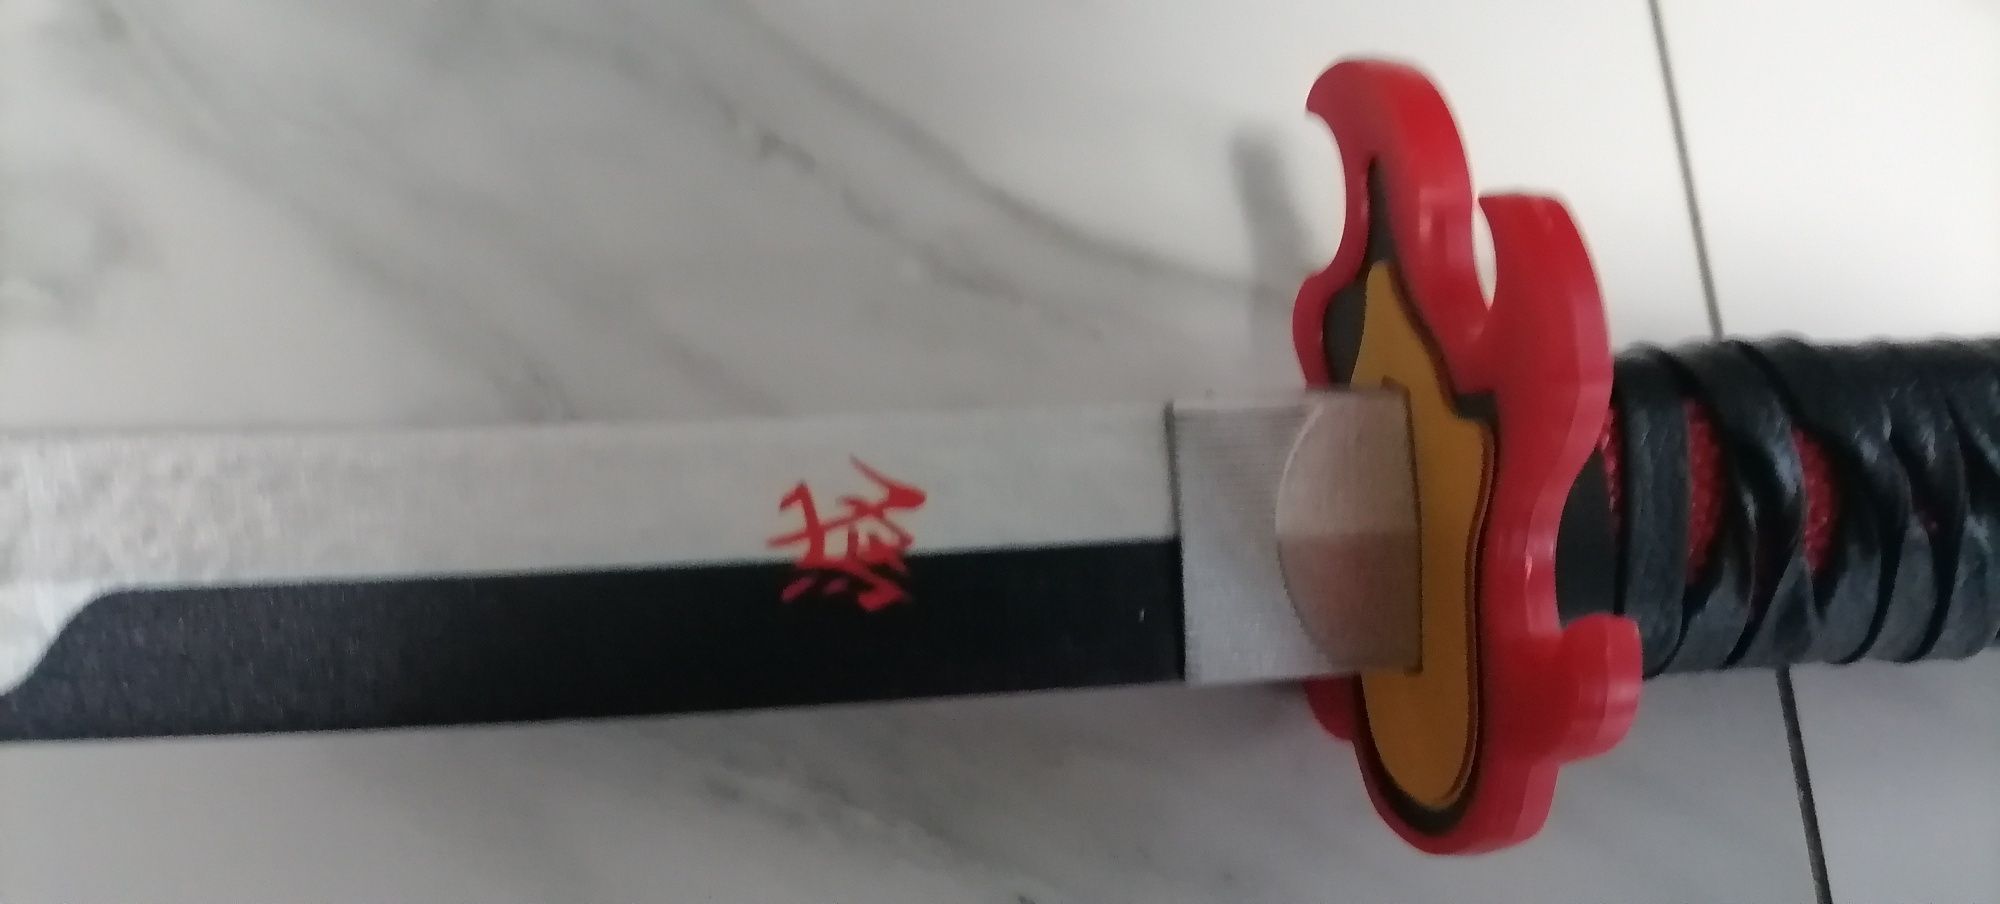 Katana miecz japoński miecz samuraja zabawka dla dzieci